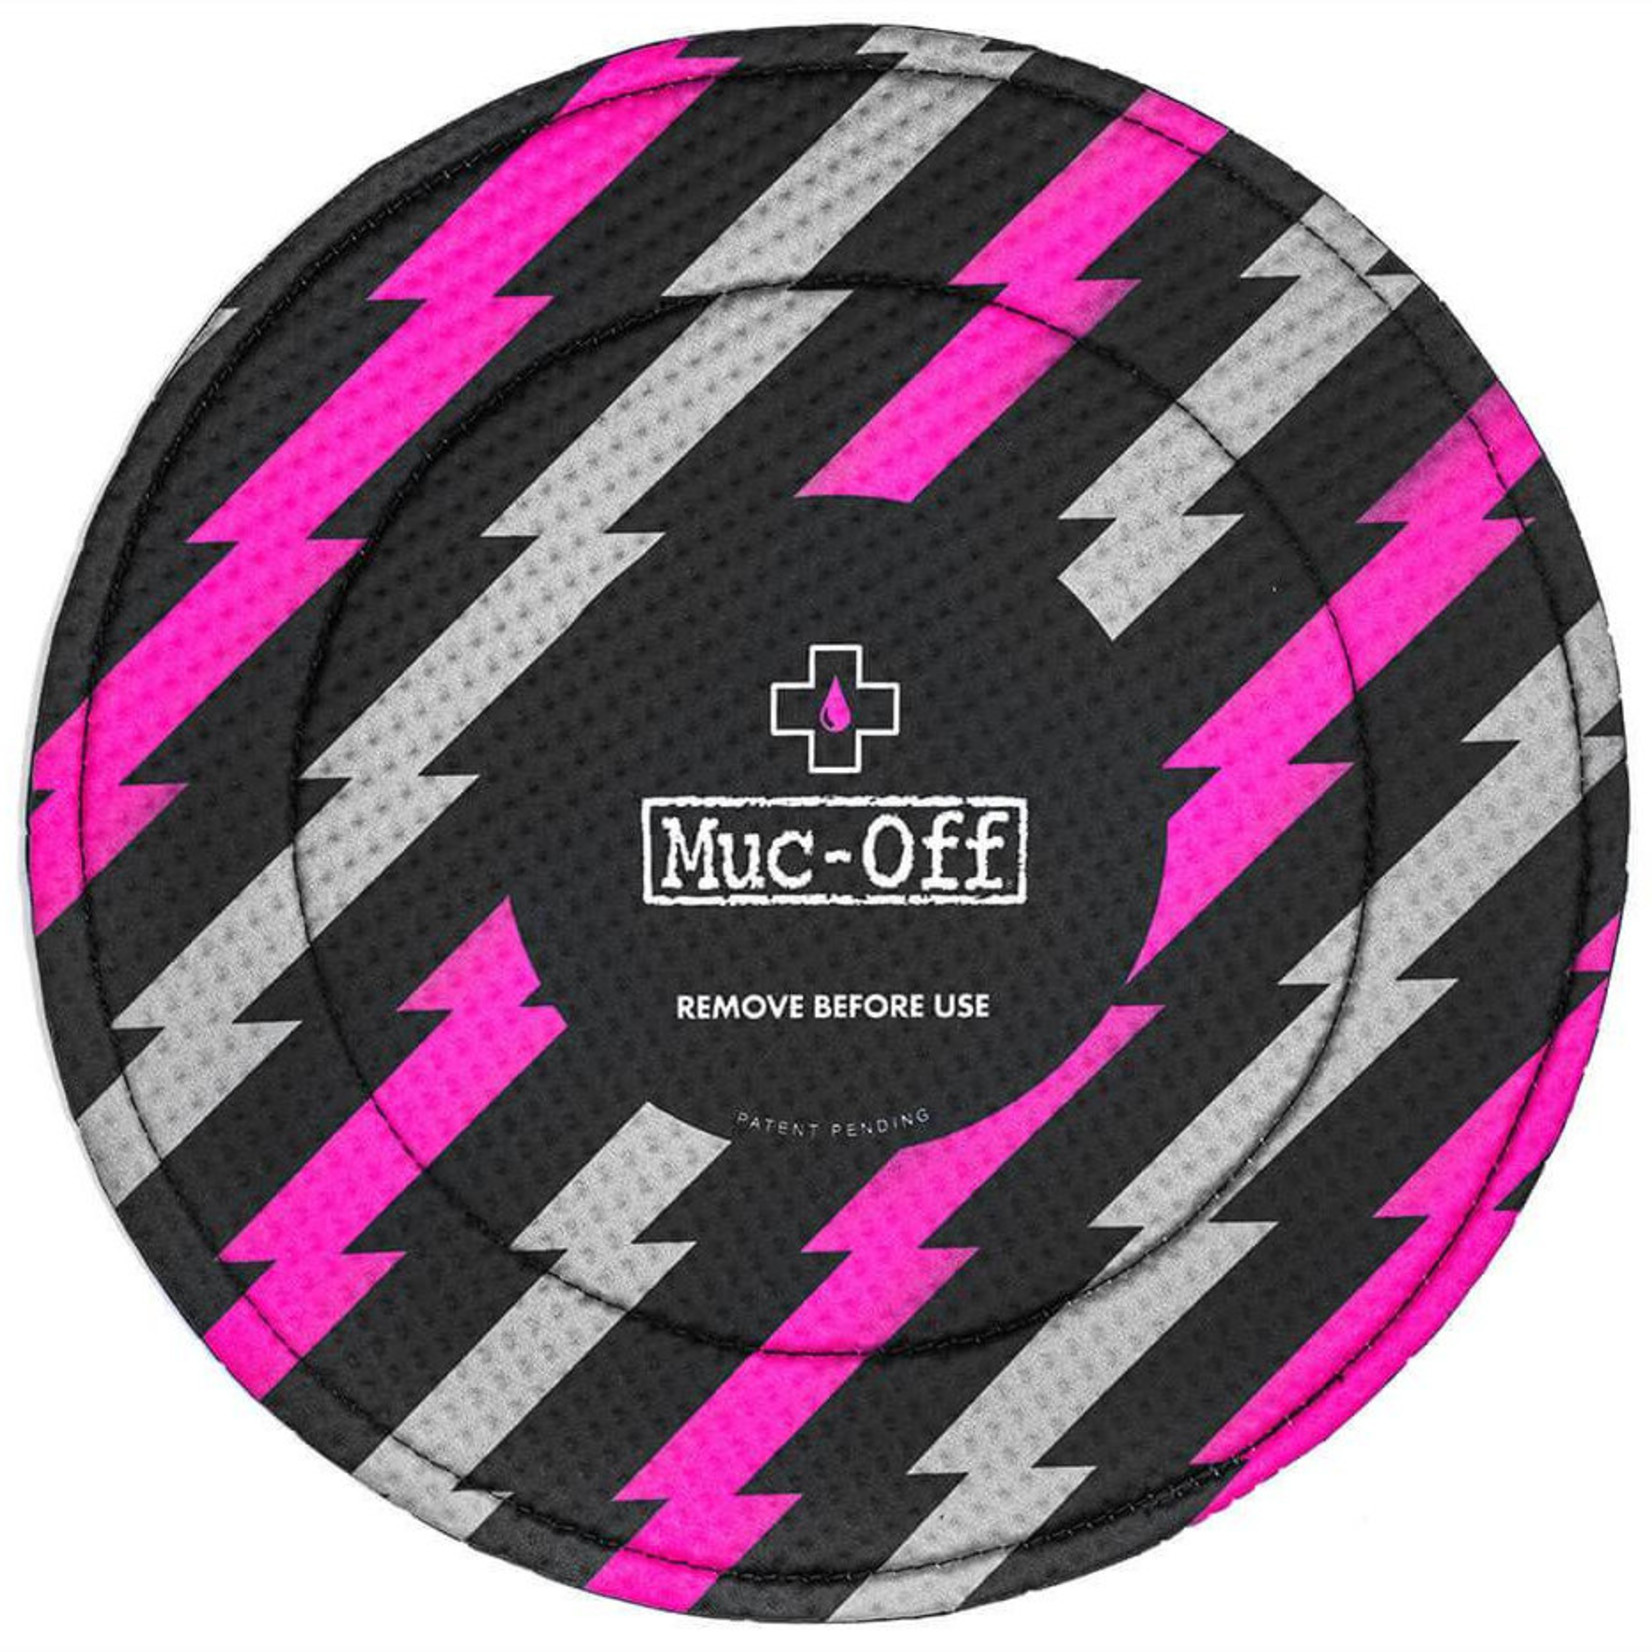 Muc-Off Muc-Off, Disc Brake Cover